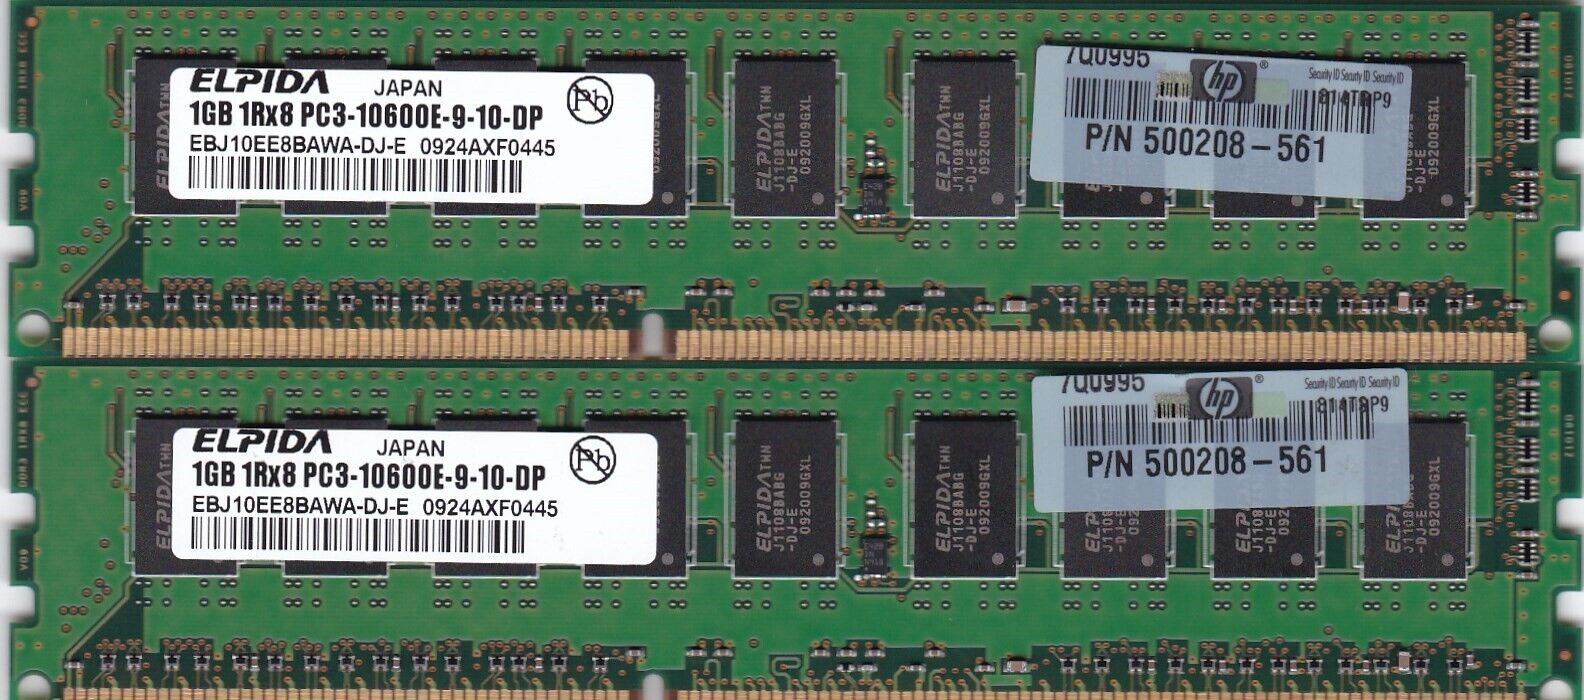 2GB 2x1GB ELPIDA PC3-10600E DDR3 ECC EBJ10EE8BAWA-DJ-E RAM MEMORY HP 500208-561